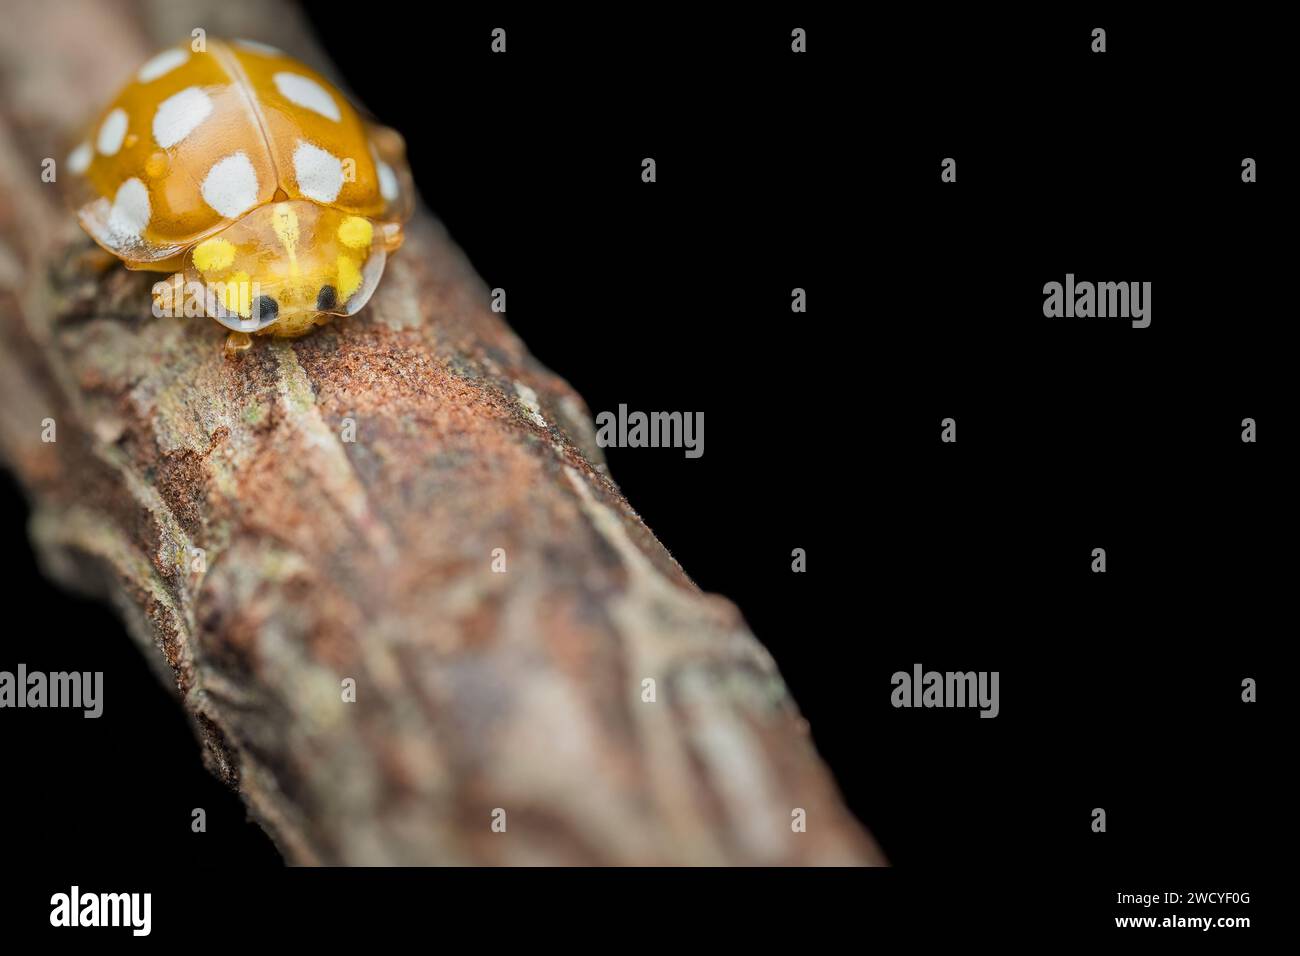 close up of an orange ladybug Stock Photo